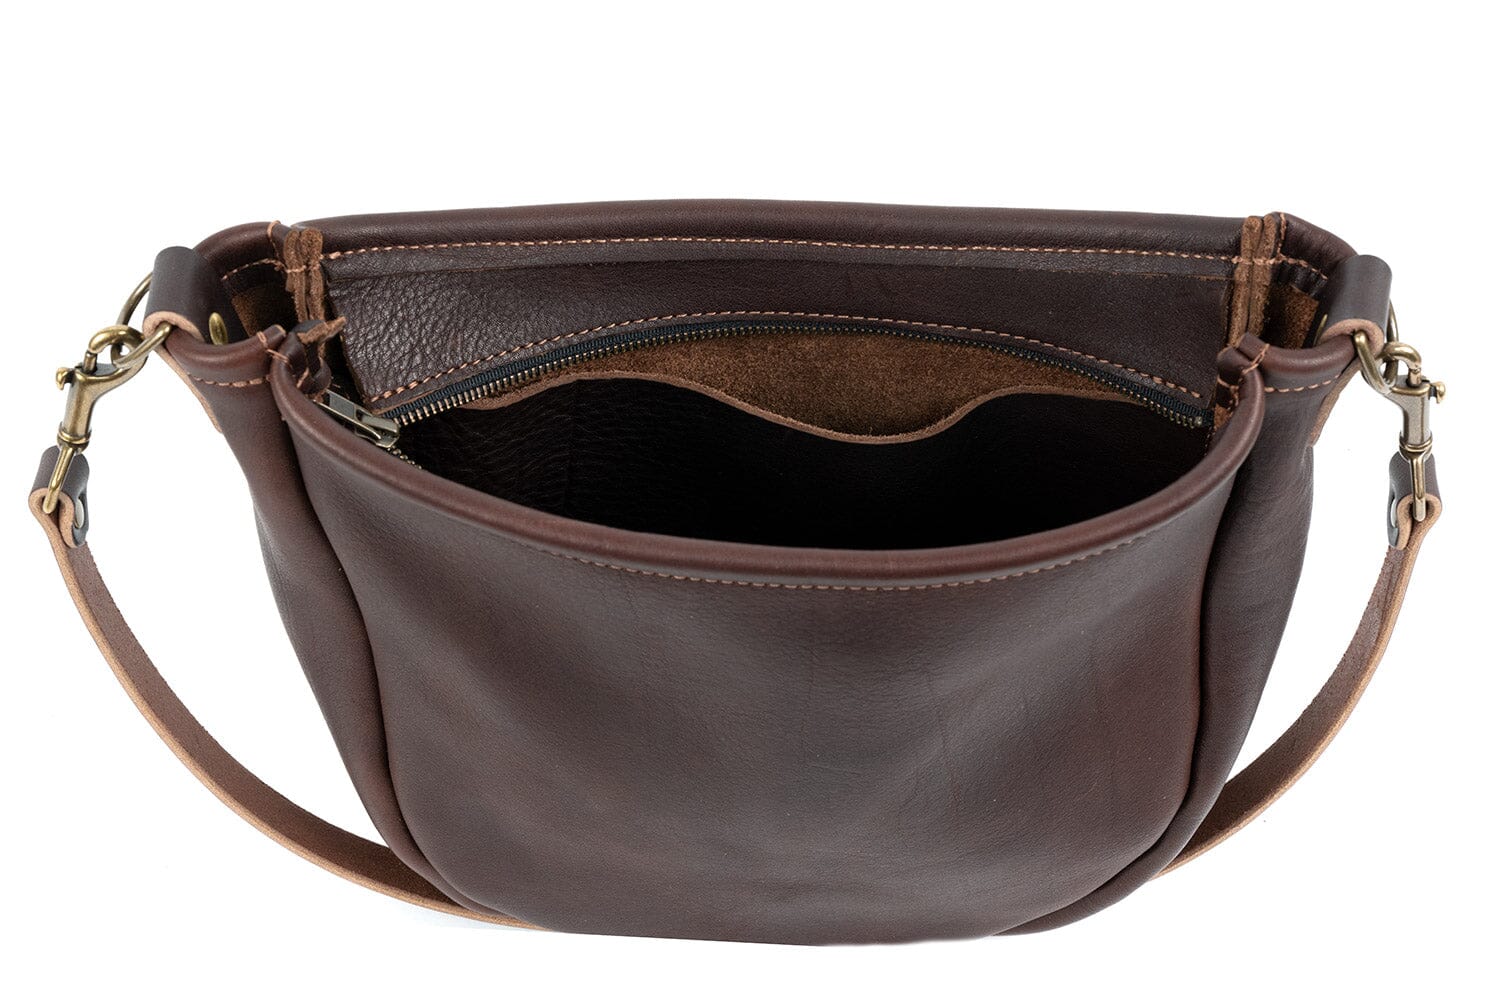 Celeste Leather Hobo Bag - Large - Saddle - Go Forth Goods ®